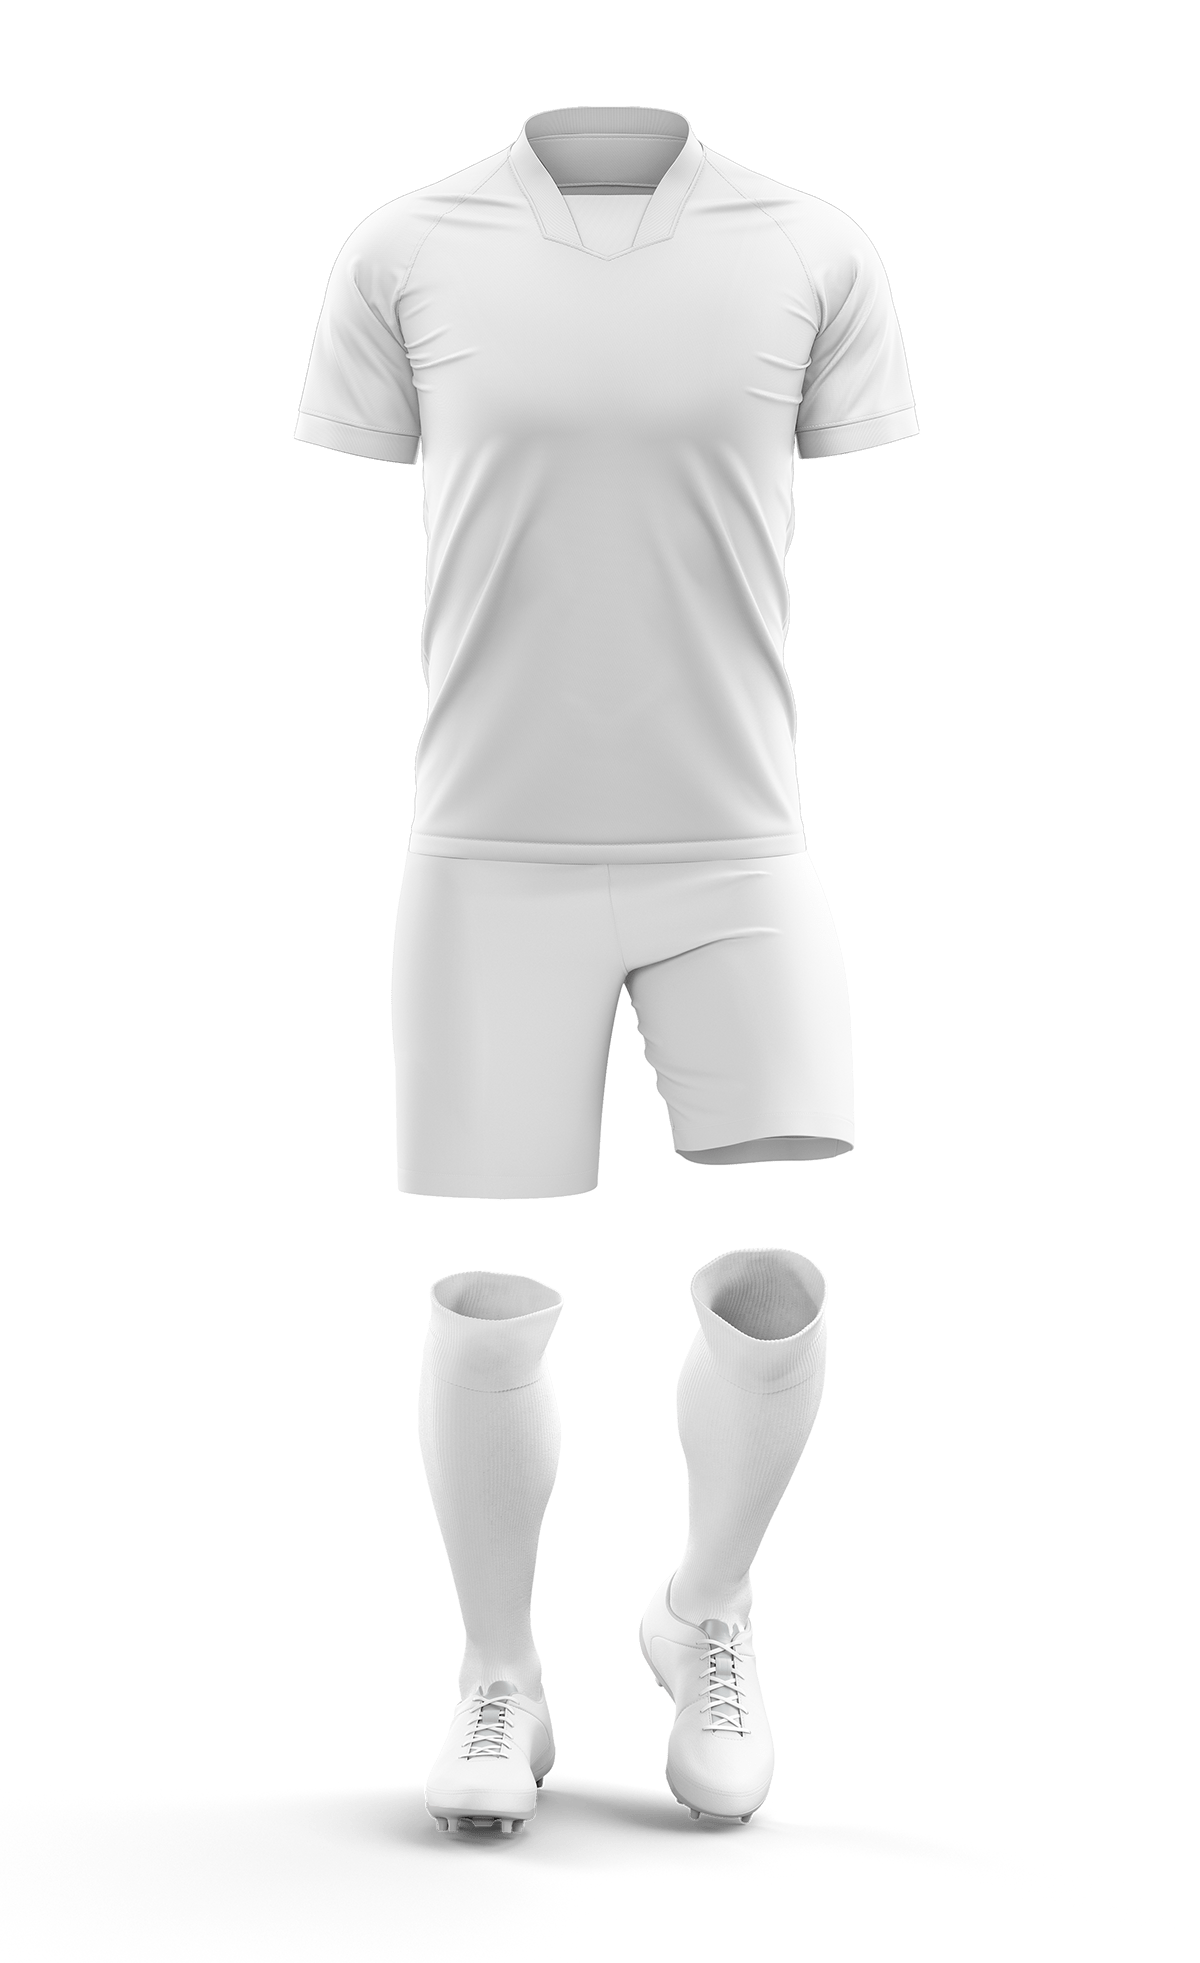 Jersey Design mockup design mockup jersey mockup kit New mockup Soccer Kit Design